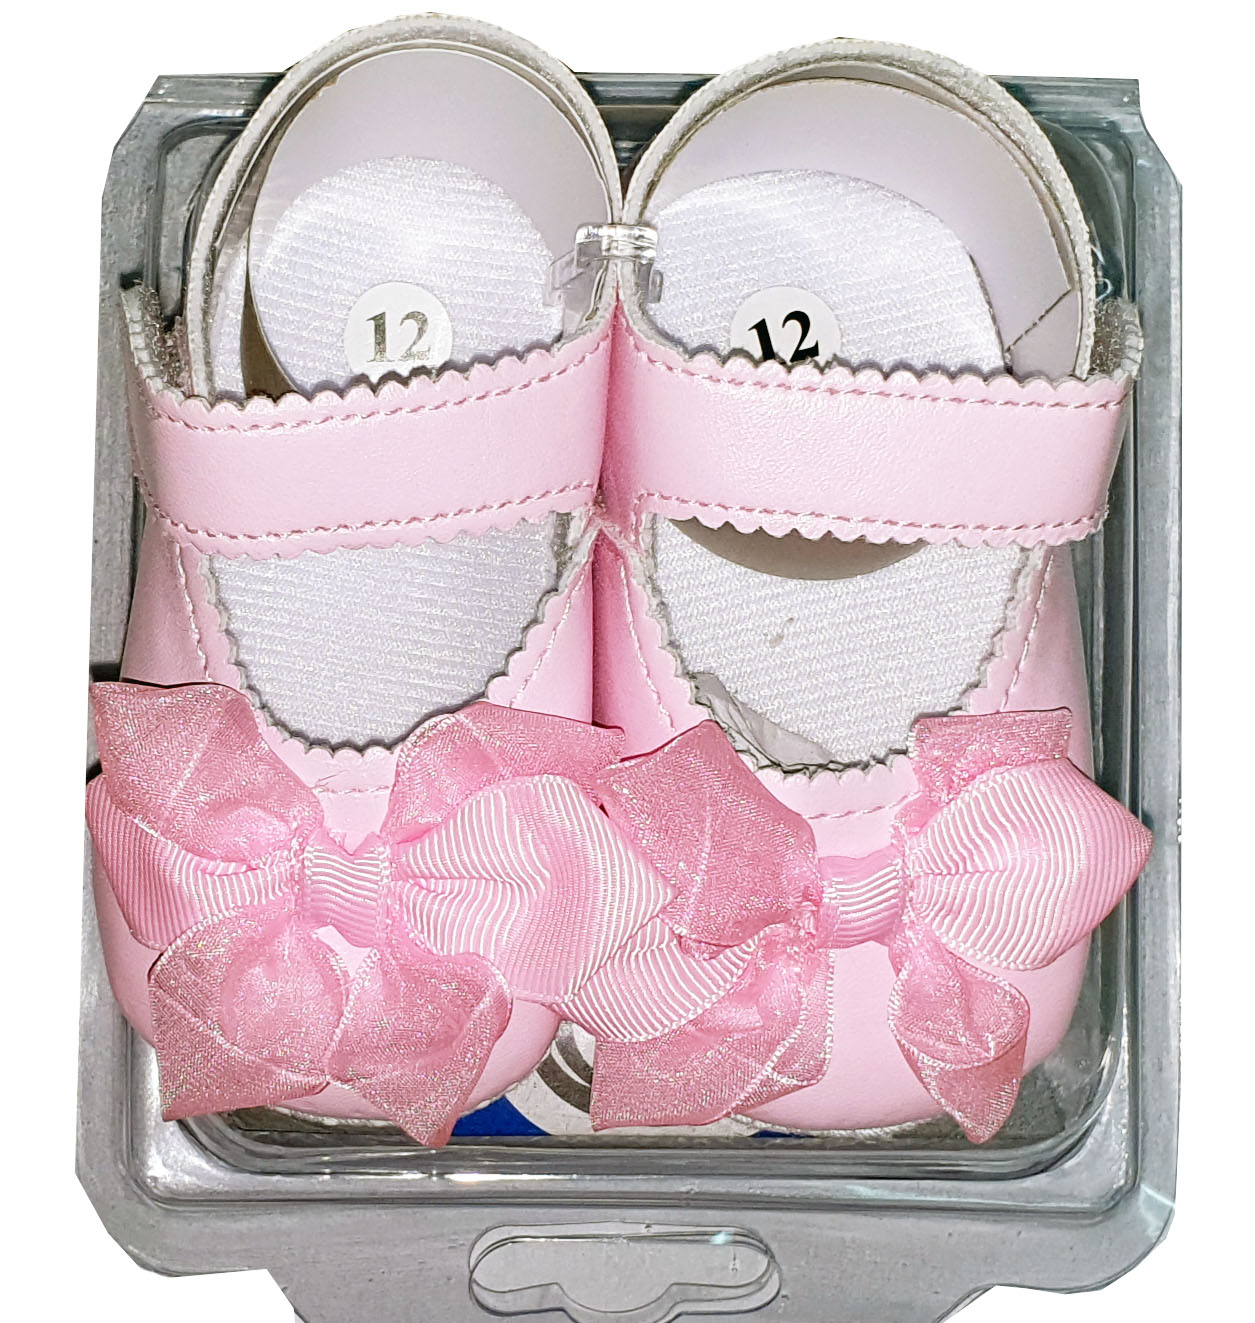 size 12 infant shoes